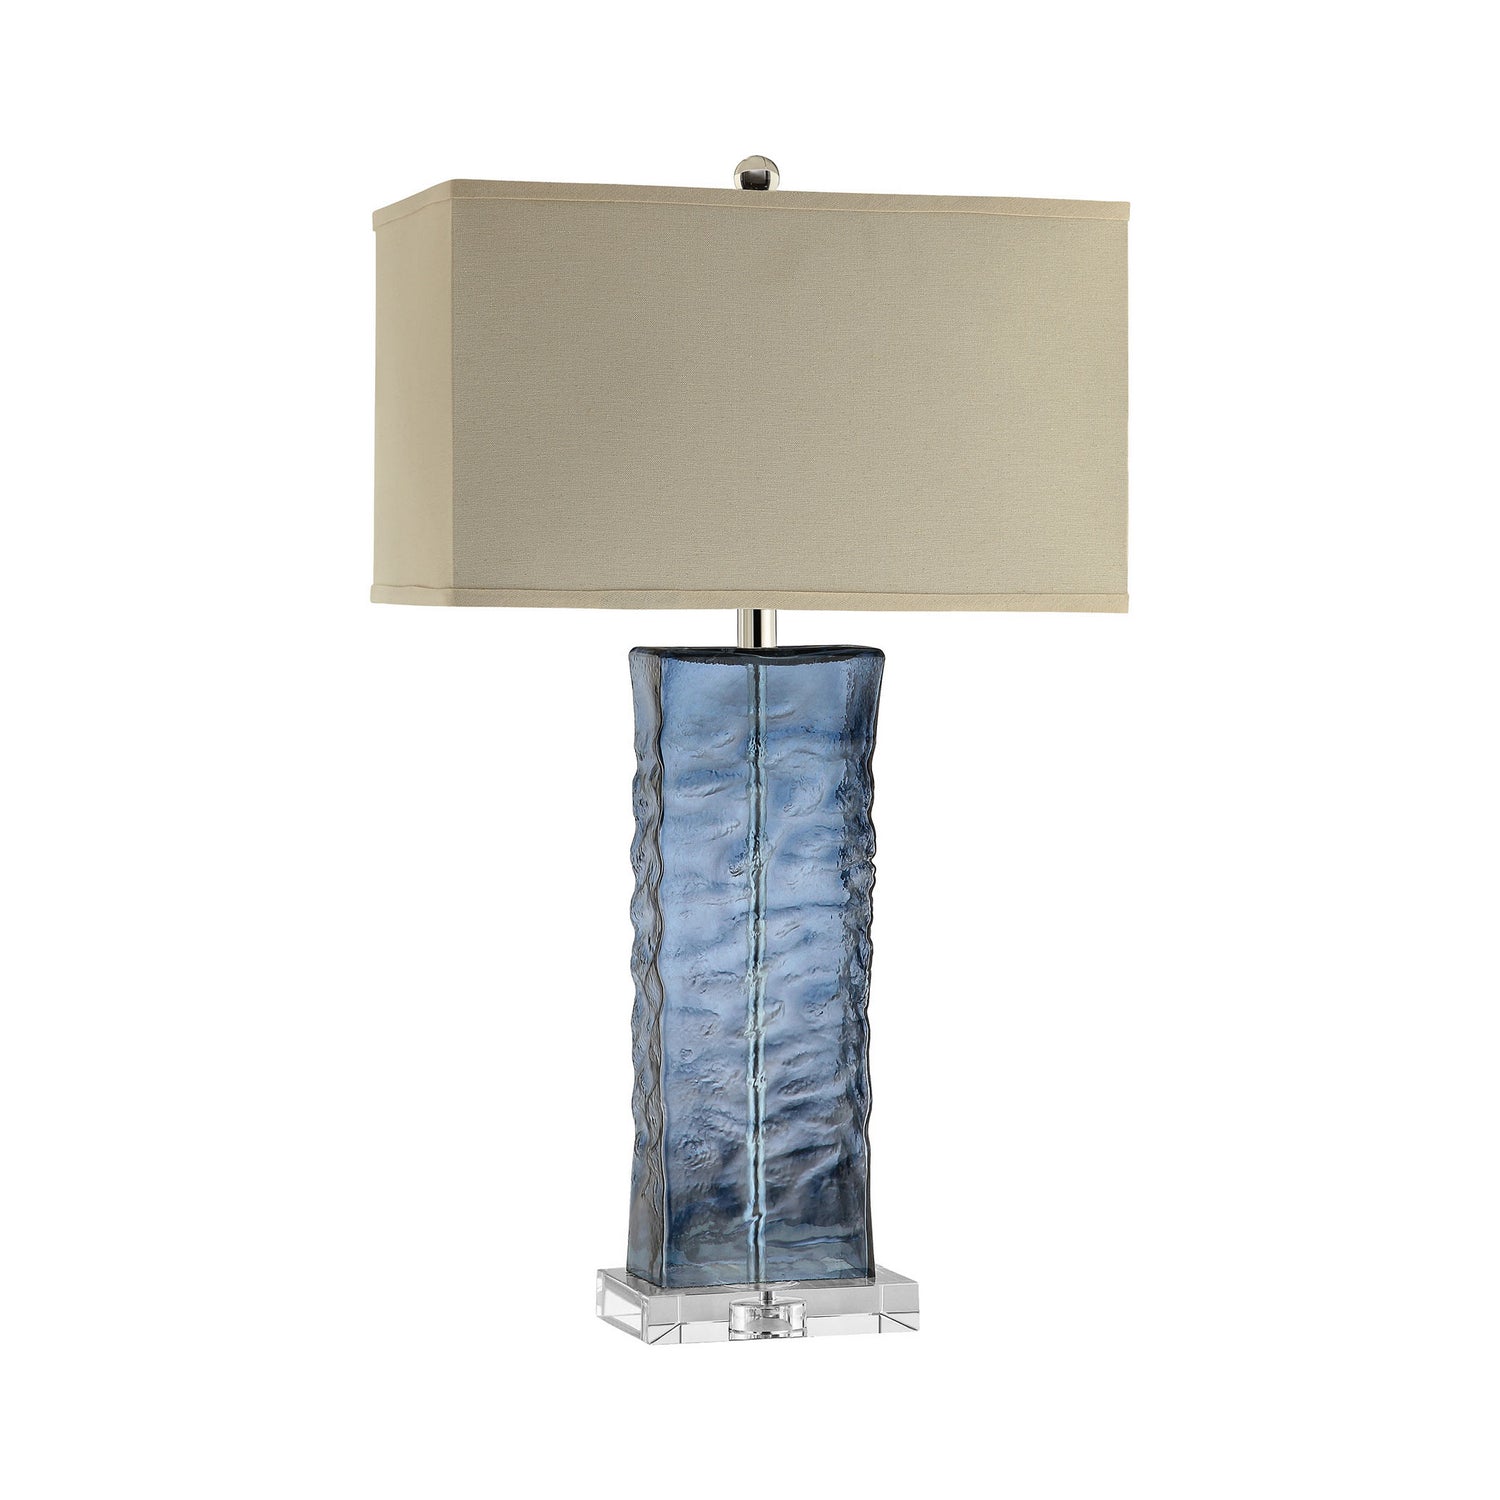 ELK Home - 99763 - One Light Table Lamp - Arendell - Blue